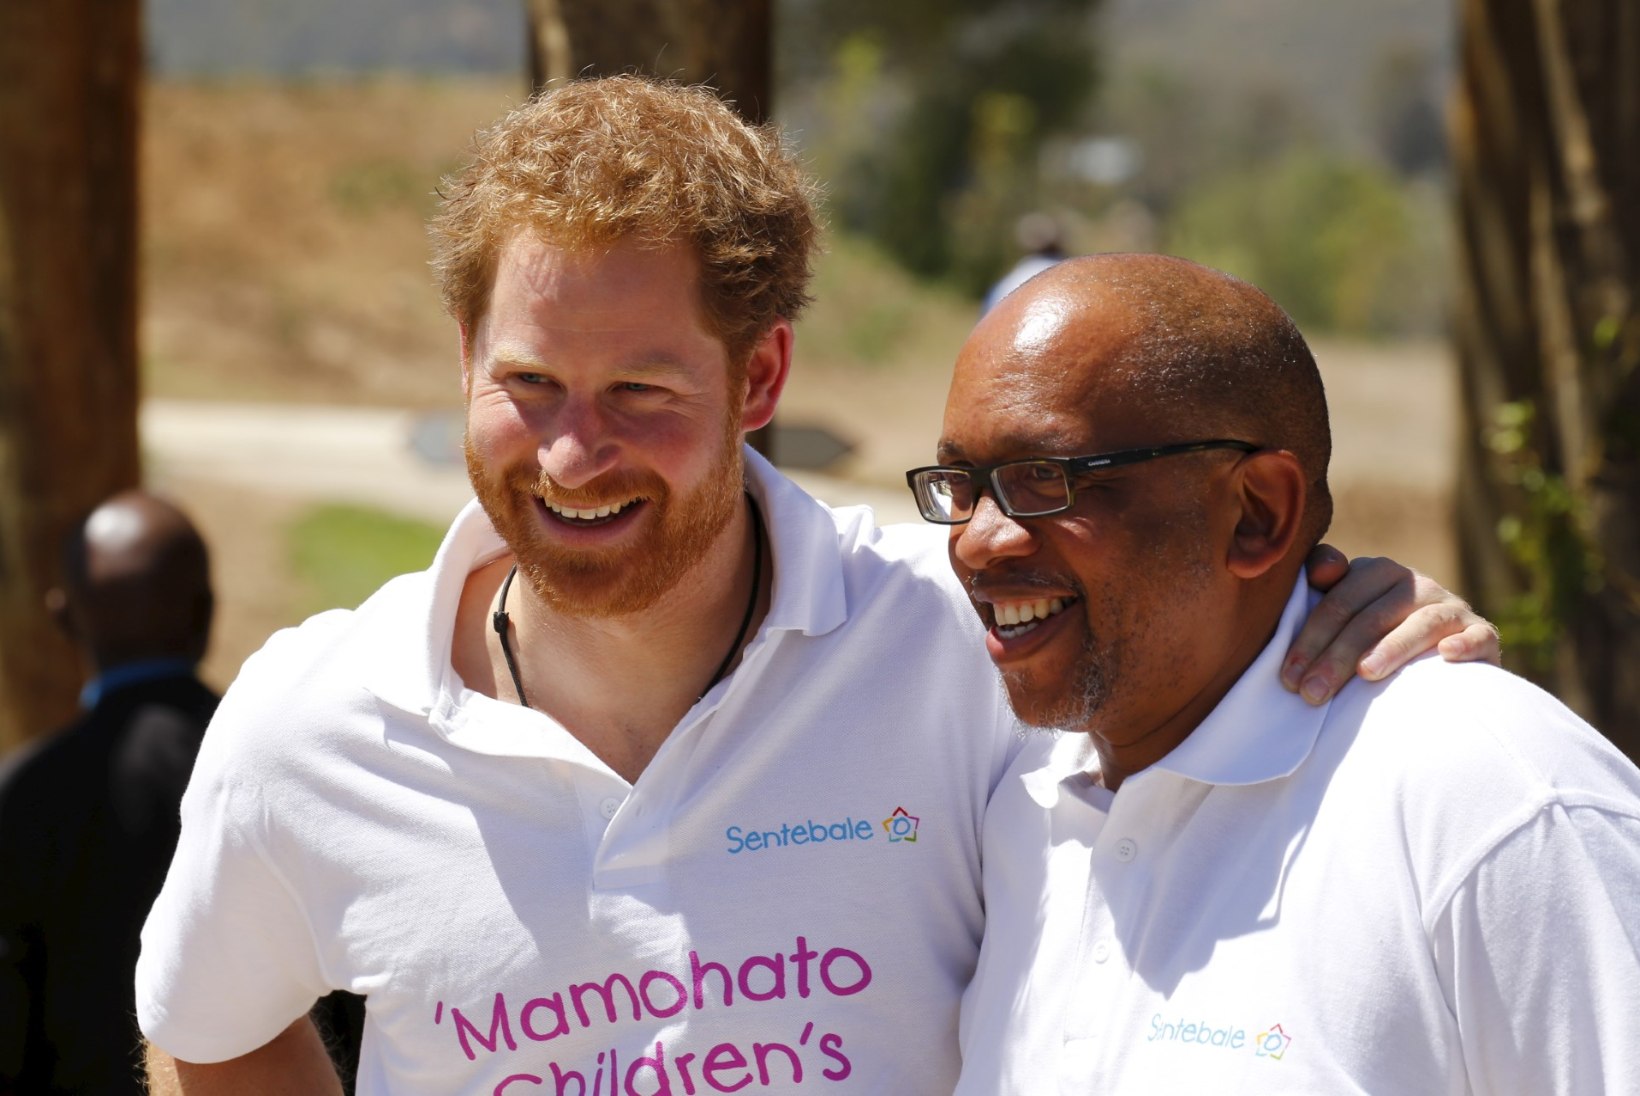 FOTOD | Nii võitleb prints Harry Aafrikas aidsi vastu